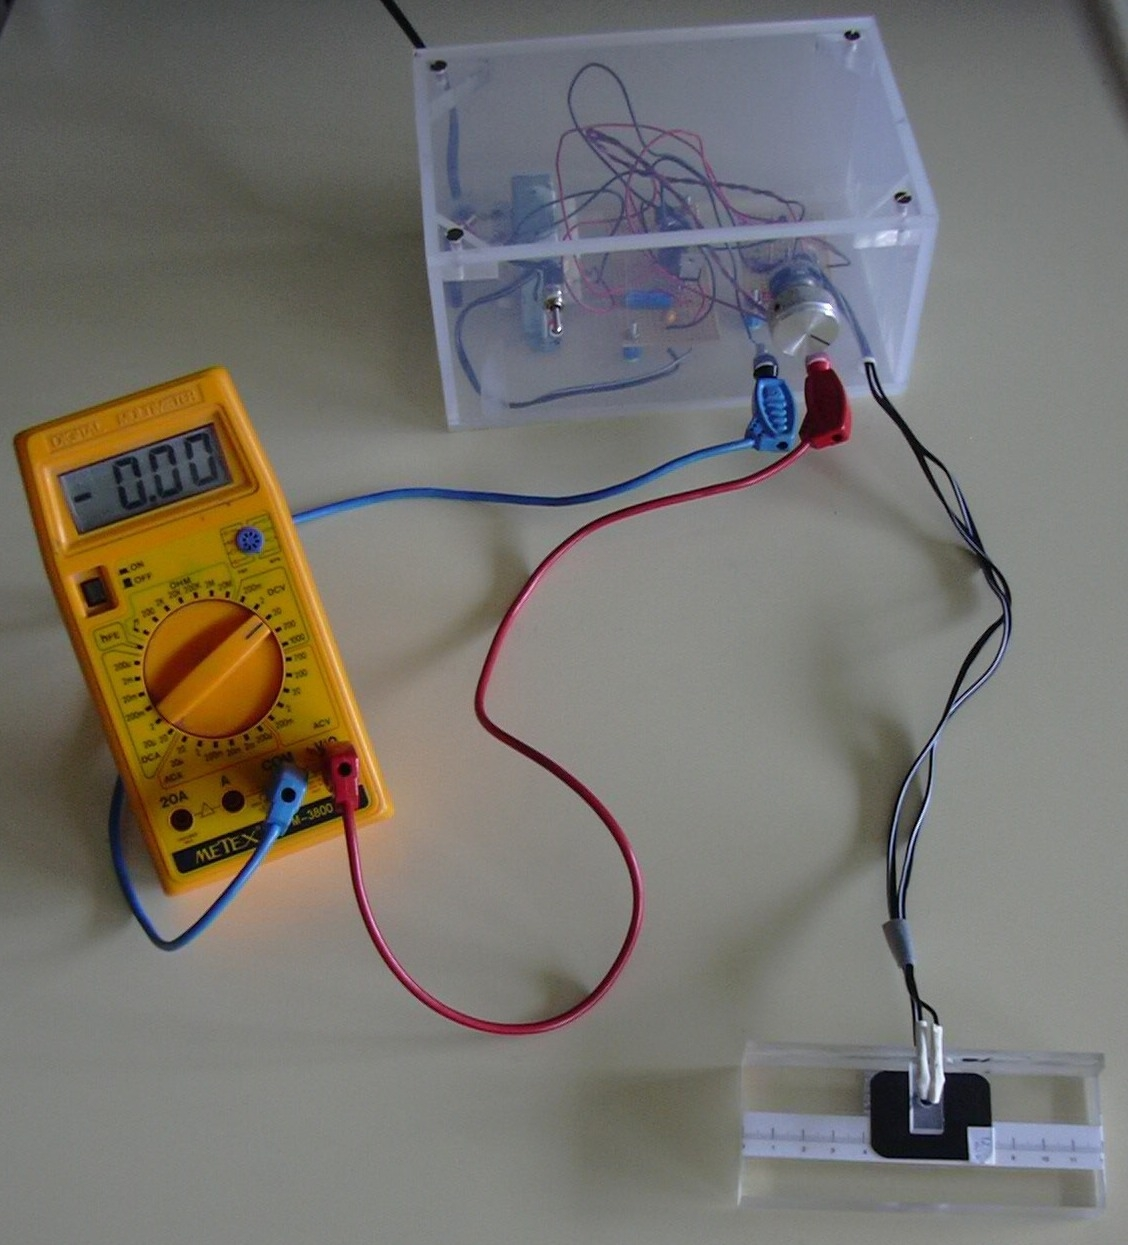 Aparelho de medida da densidade óptica Circuito emissor de luz O circuito emissor de luz, como se pode ver pela figura é constituído por um LED de infravermelho (LED IR CQY 89 A), uma resistência